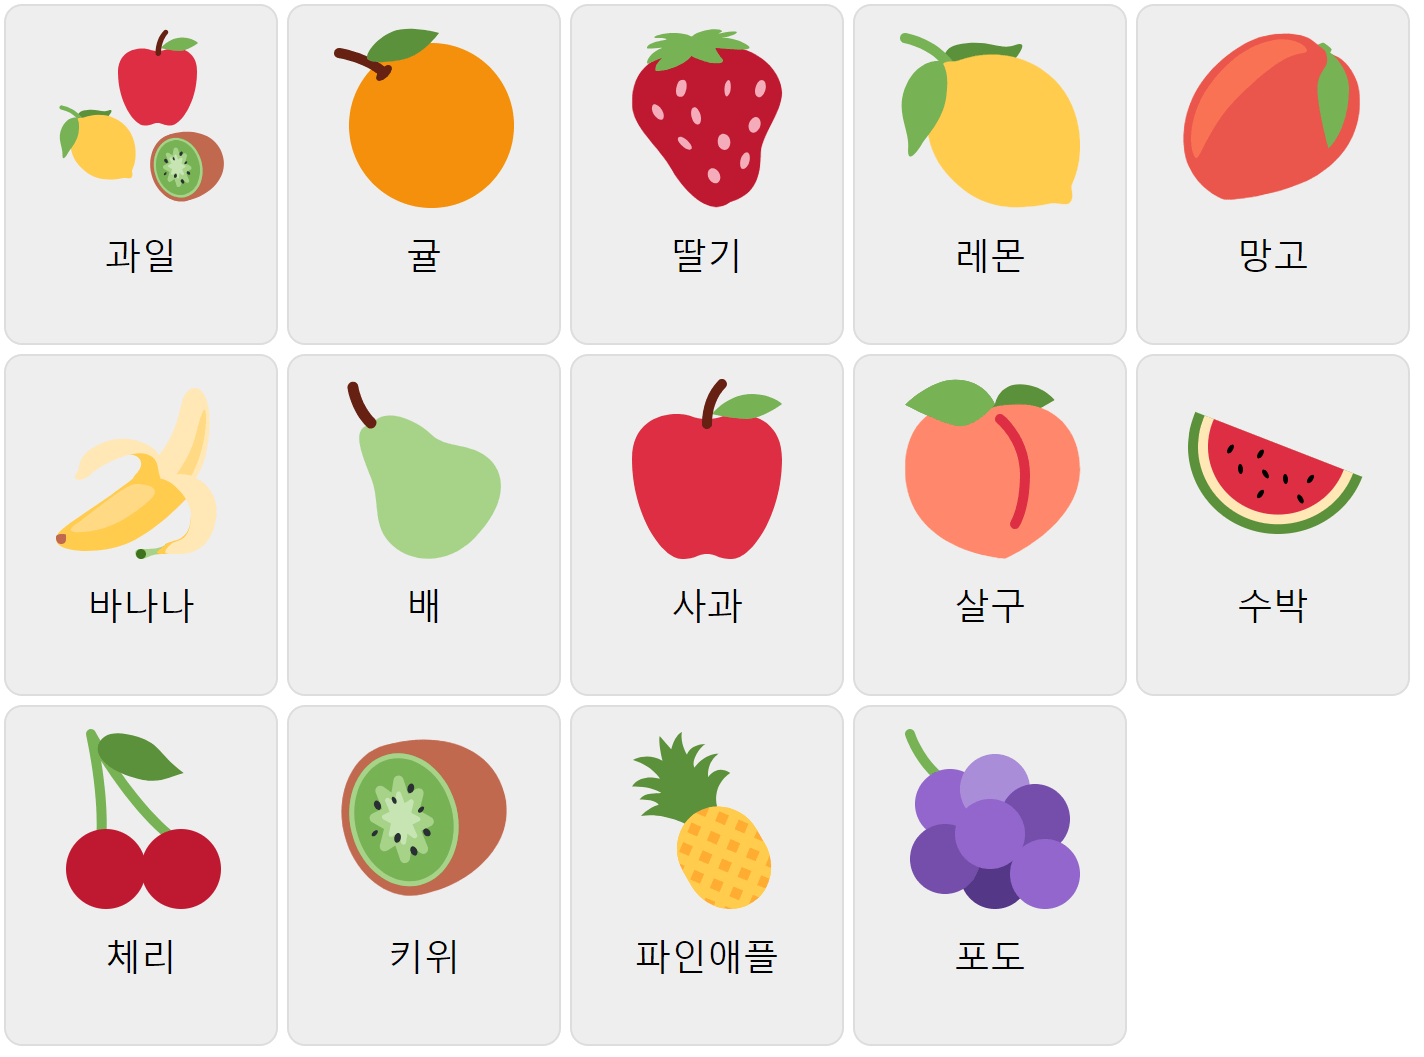 Frutas en coreano